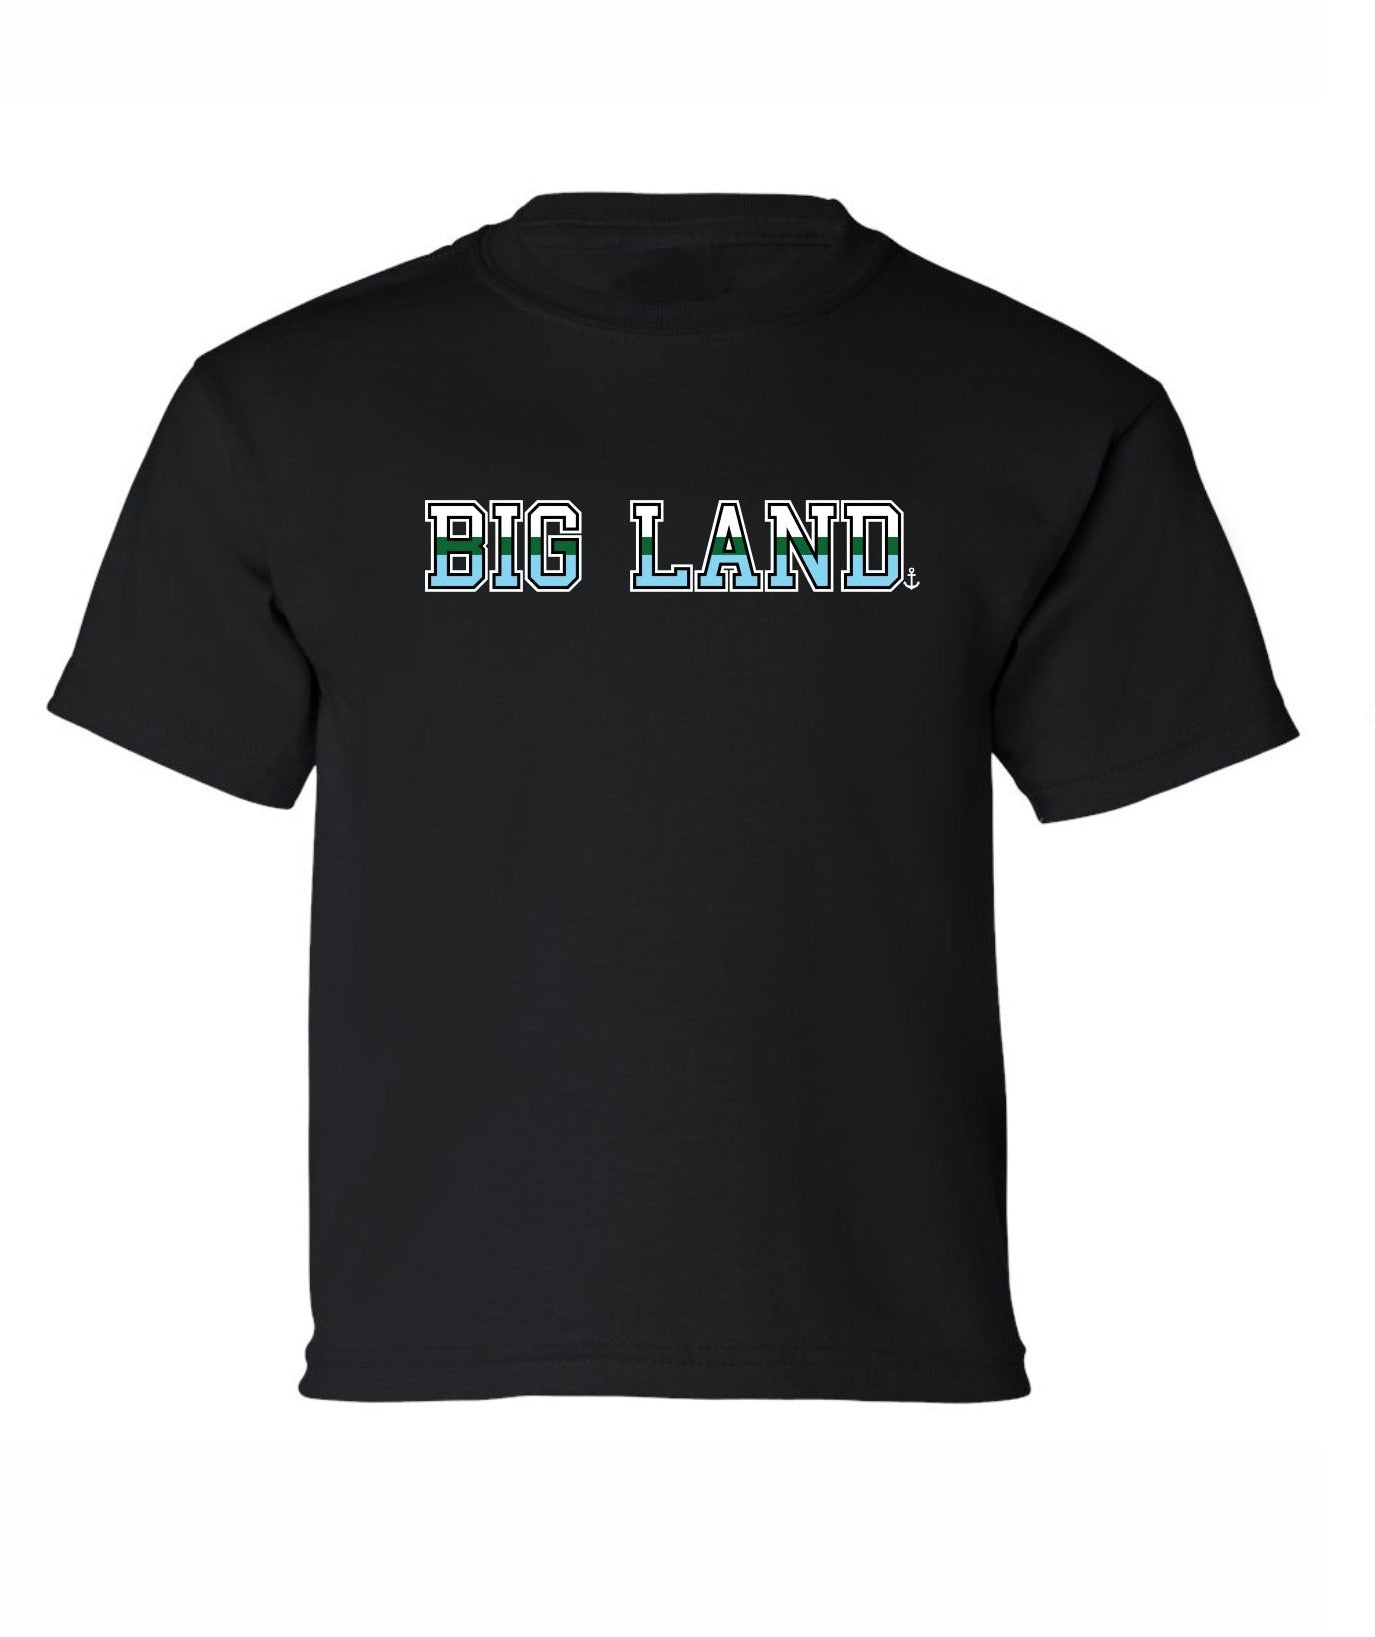 "Big Land" Toddler/Youth T-Shirt